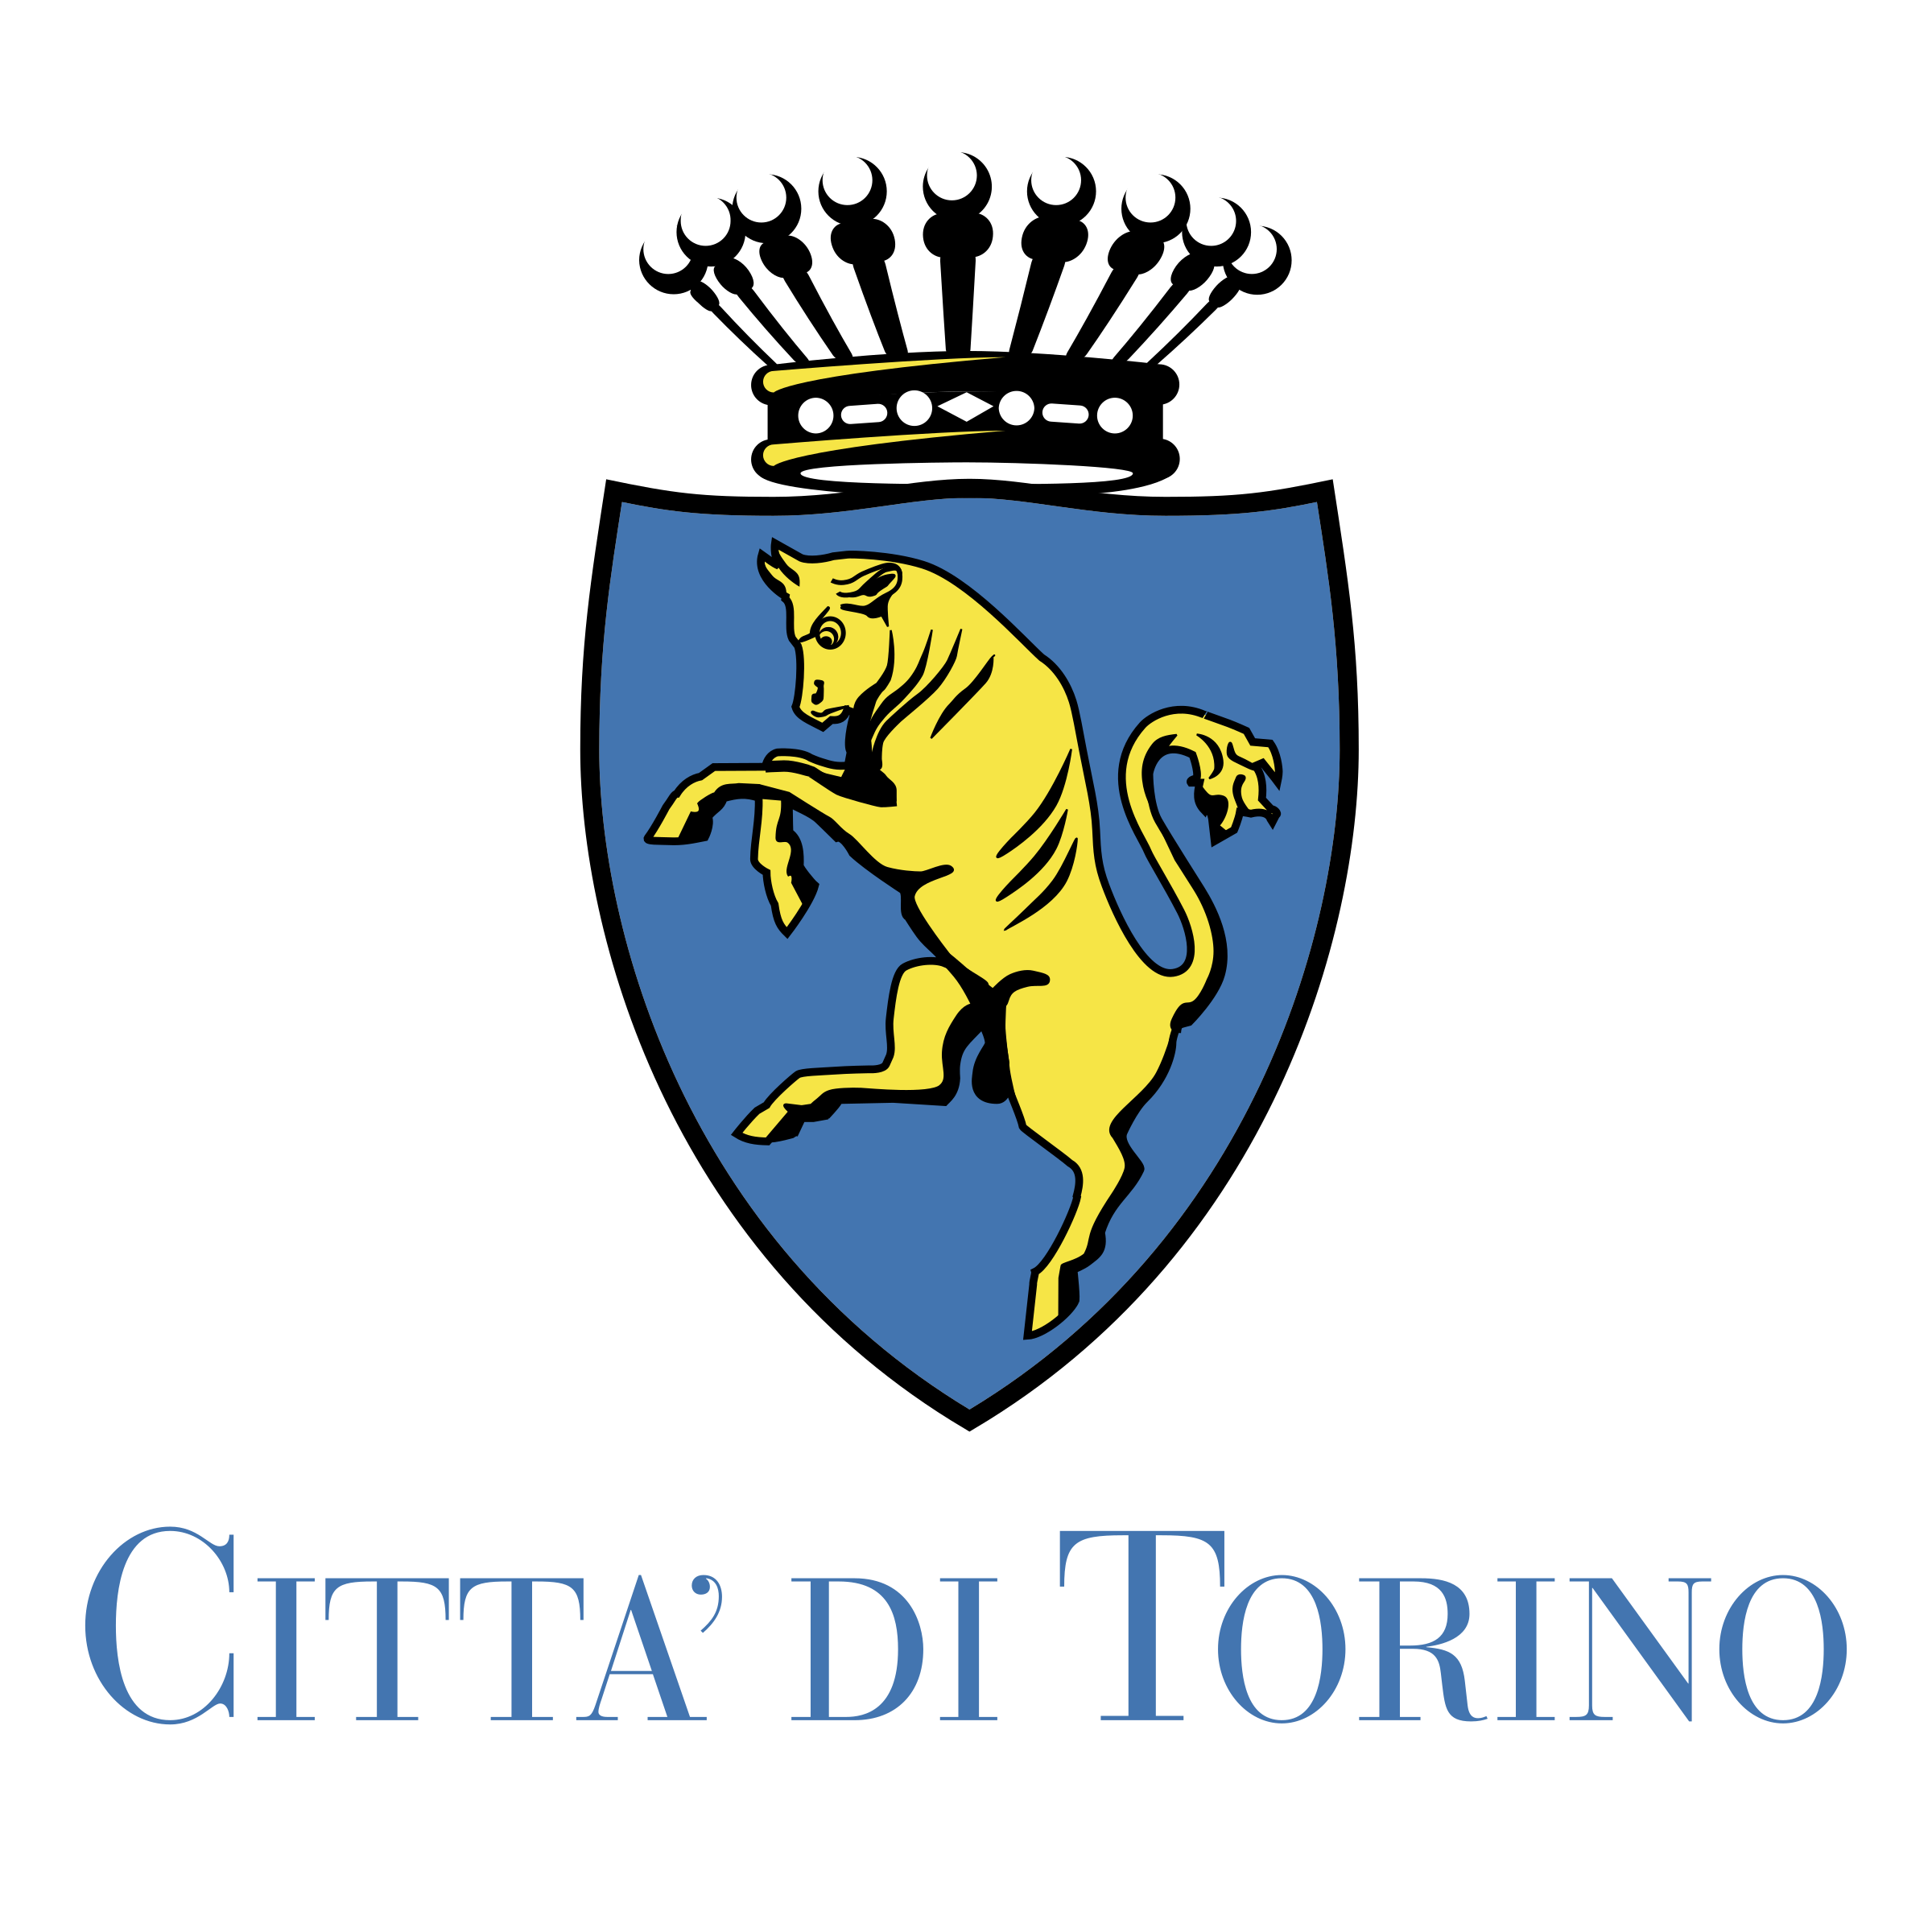 Turin city logo